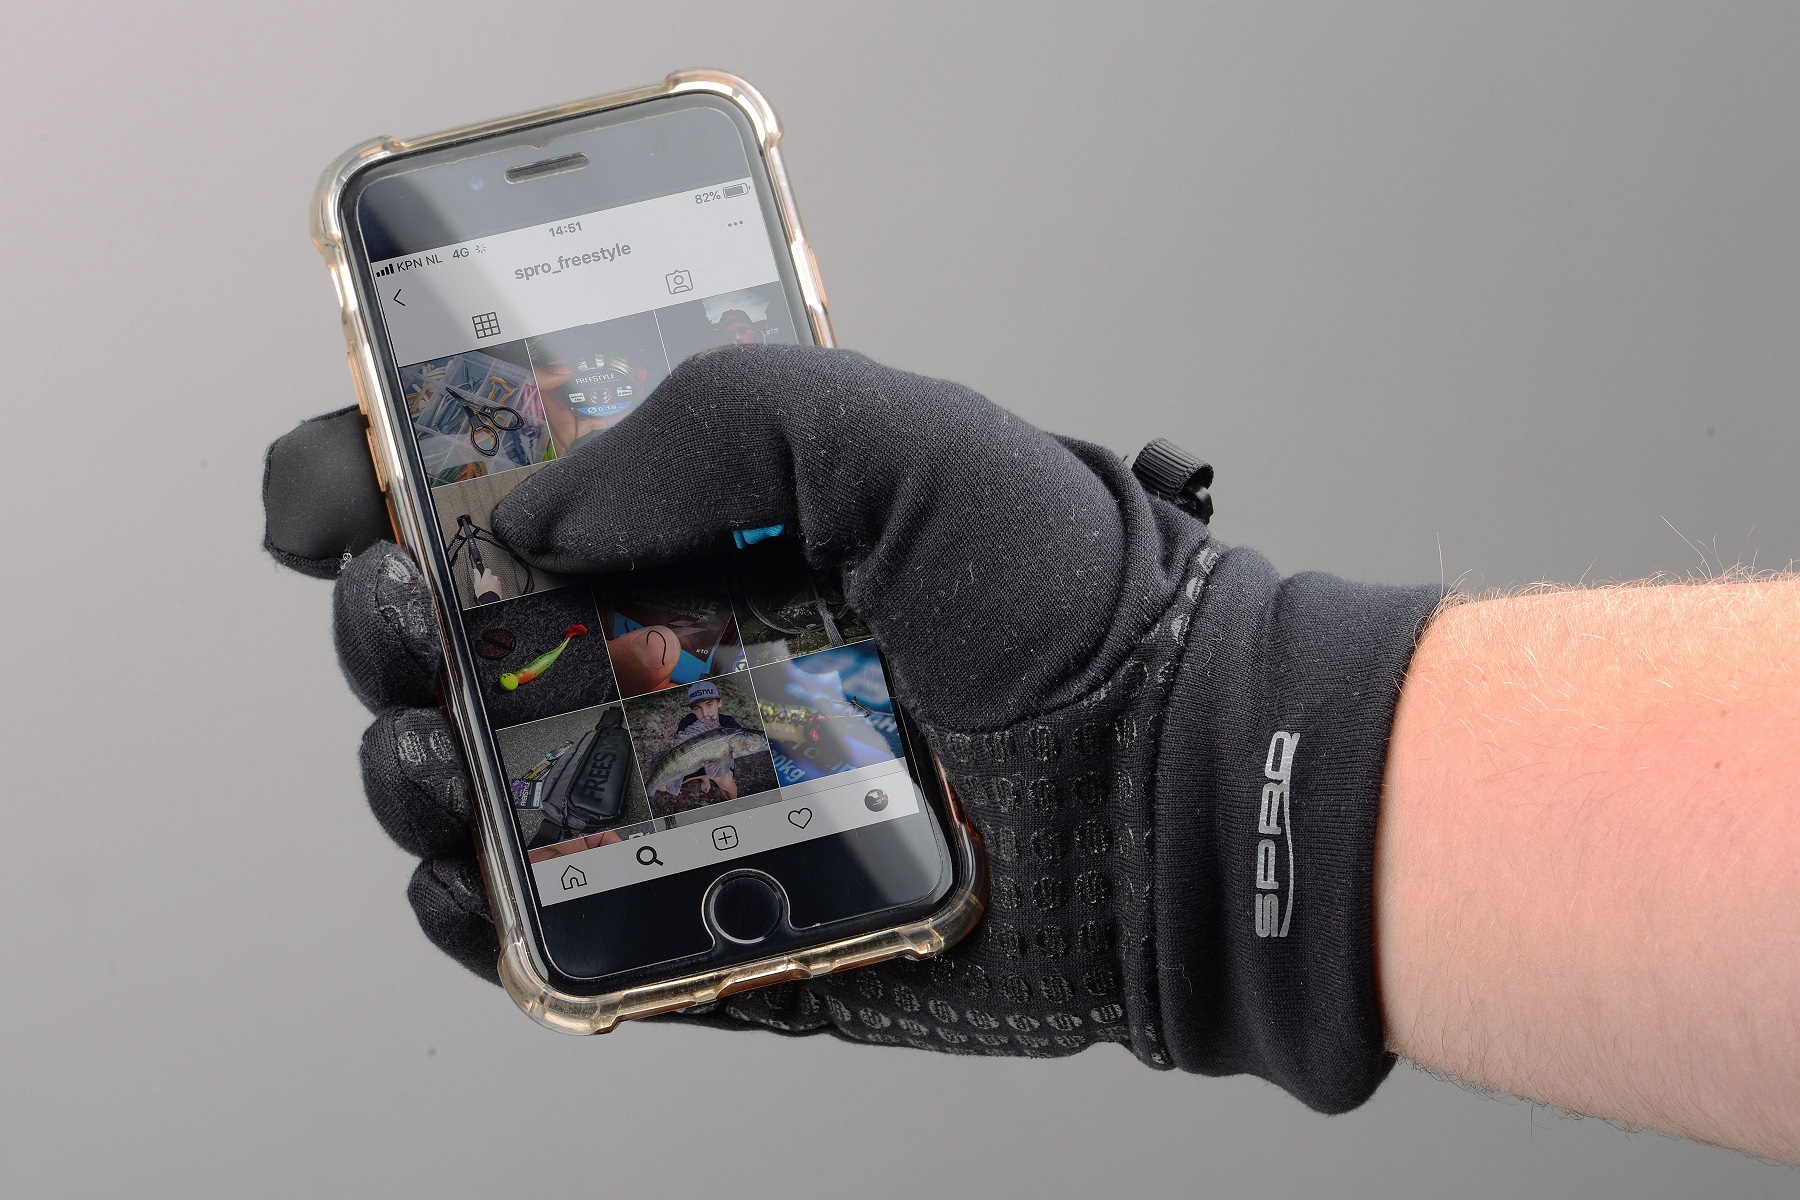 Rękawiczki Wędkarskie Spro Freestyle Touch Gloves